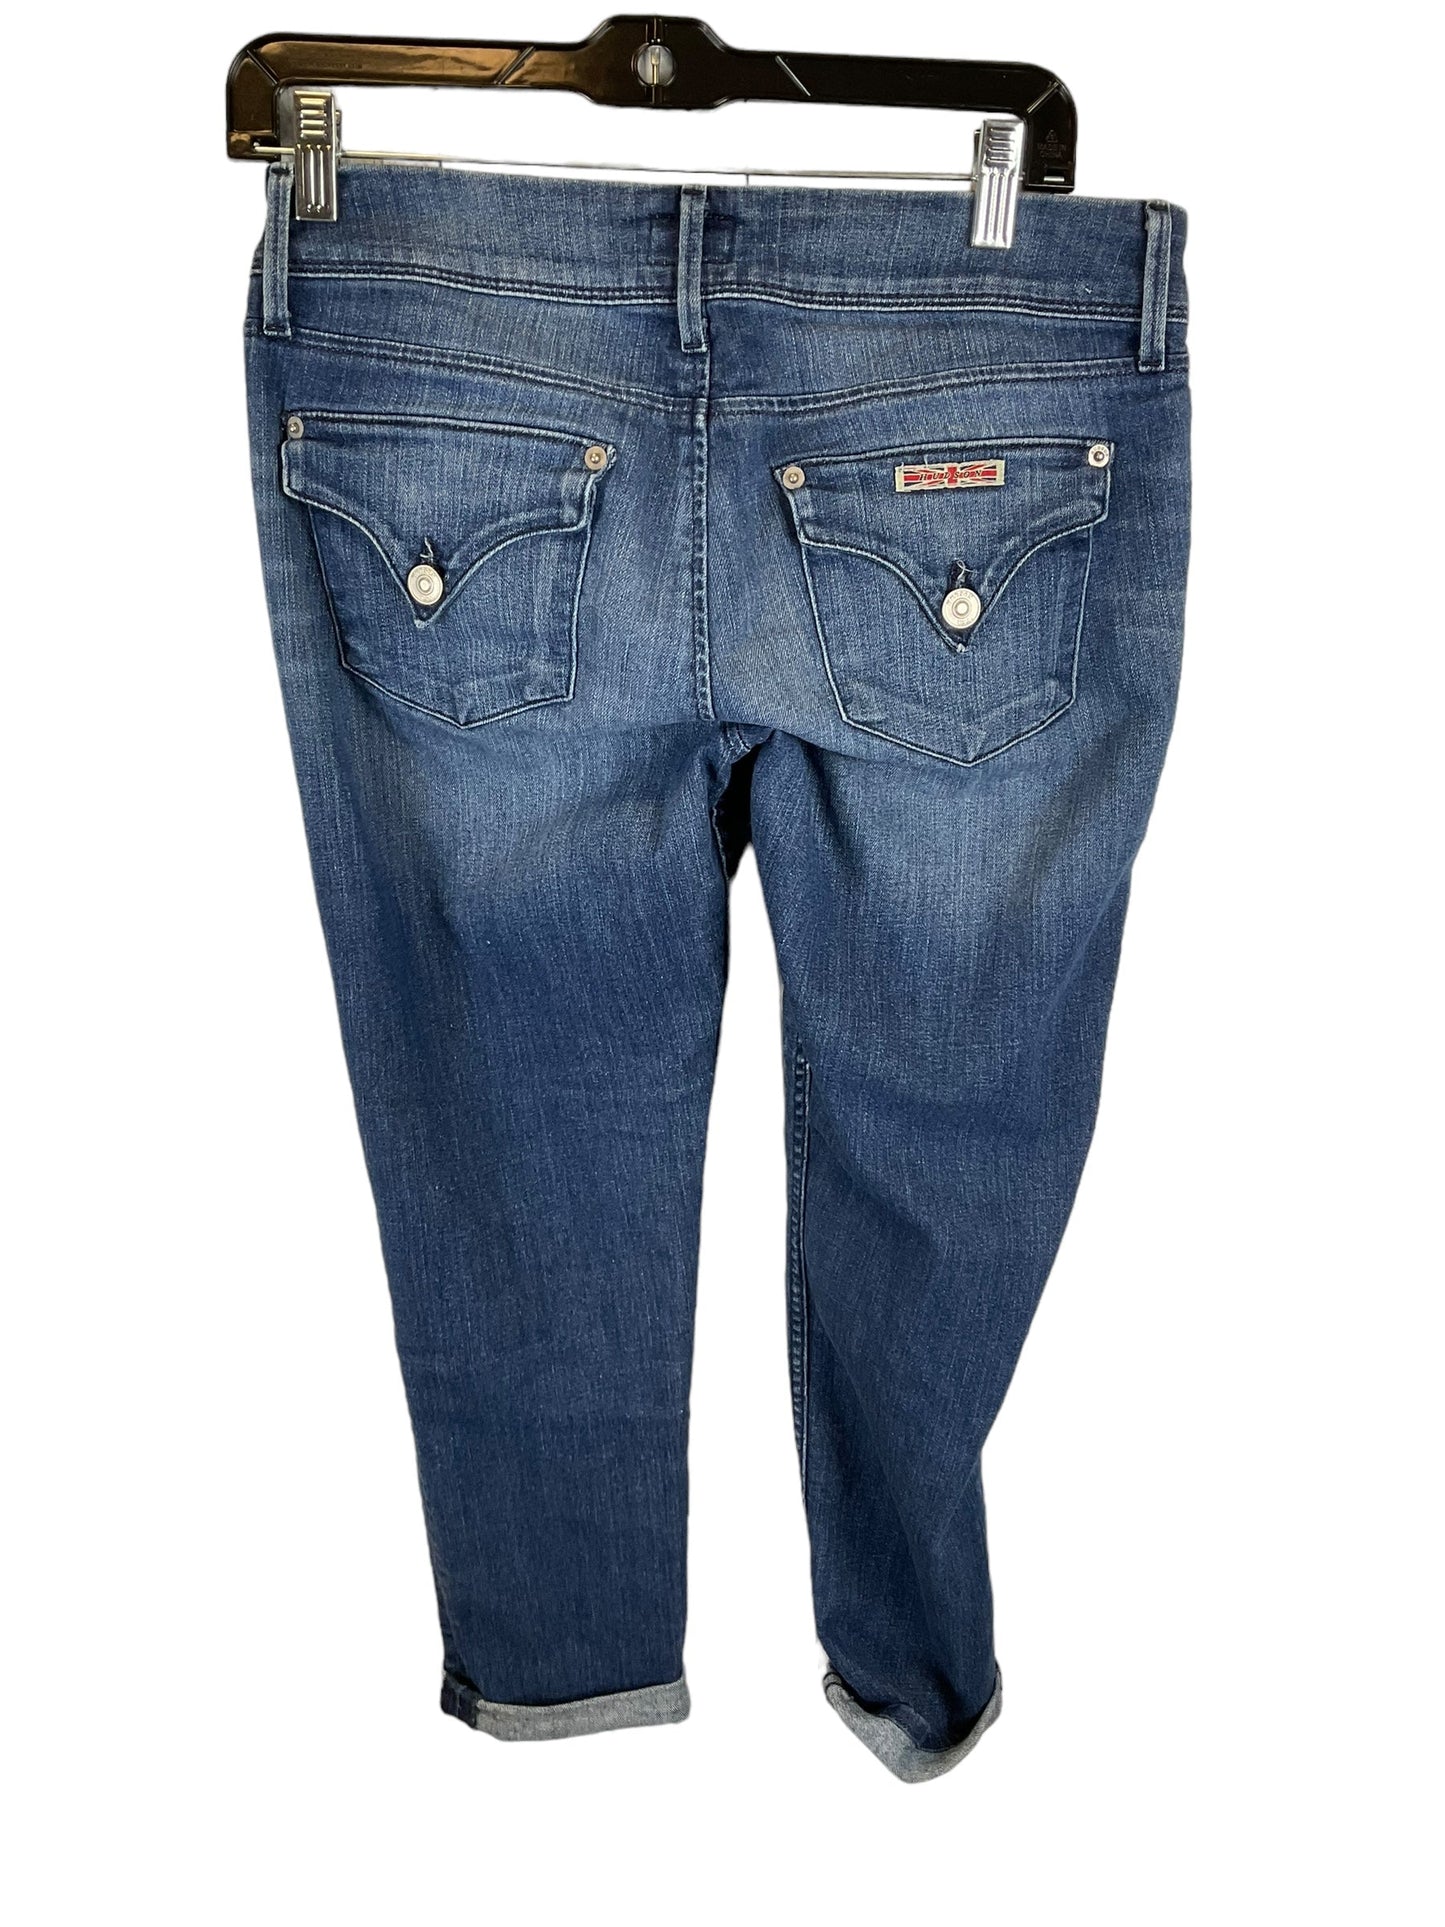 Blue Denim Jeans Designer Hudson, Size 6